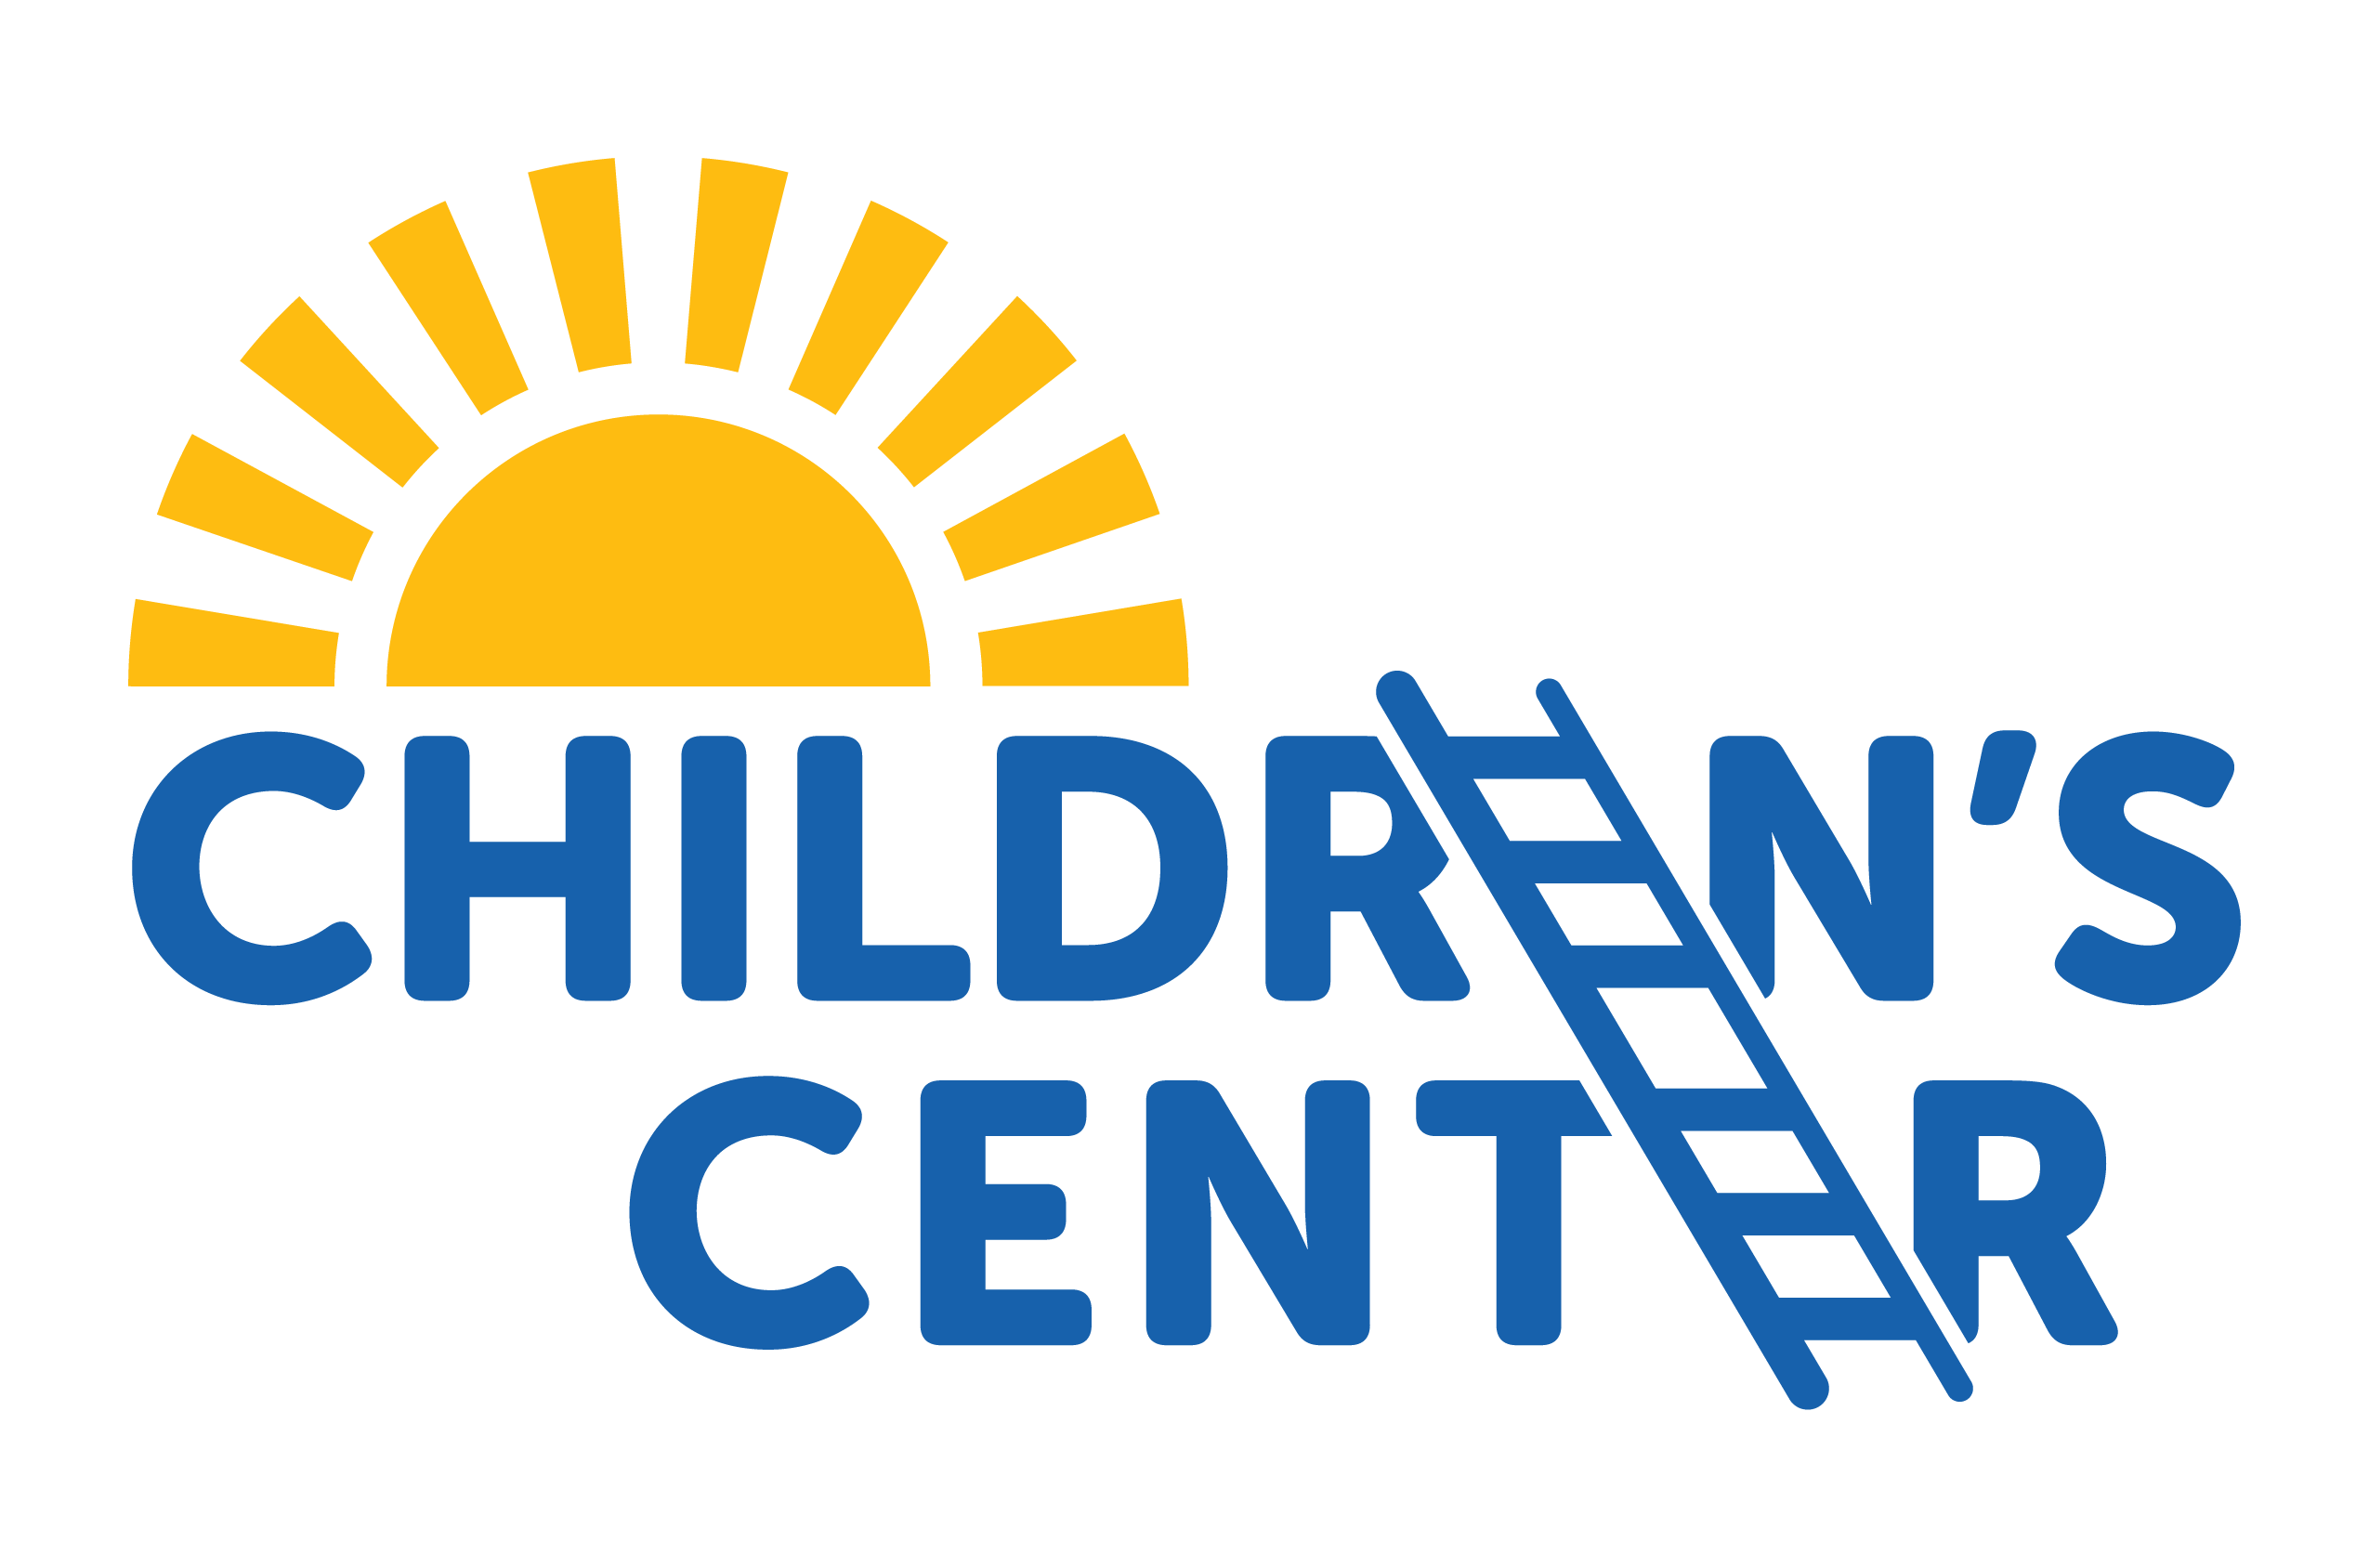 Children's Center